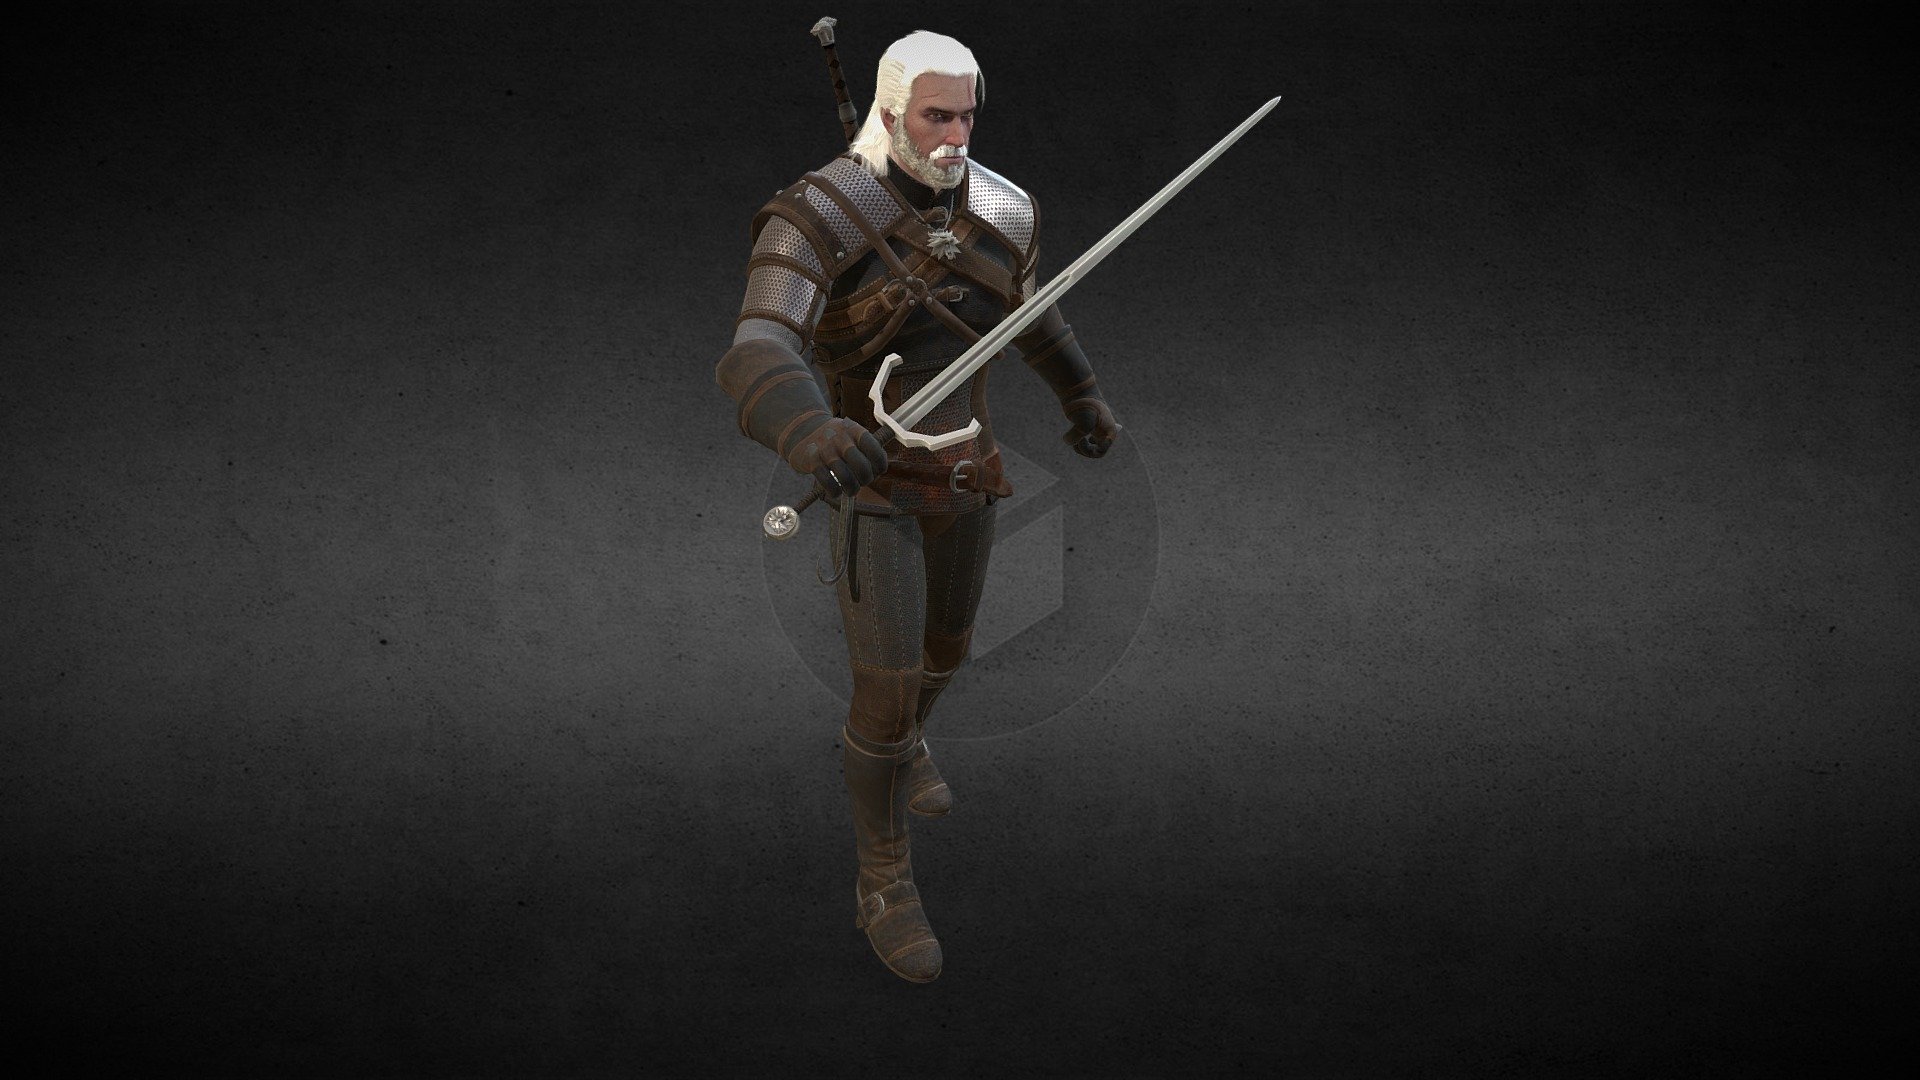 Witcher 3 Geralt Download Free 3d Model By Biswayan Biswayan 8f62c76